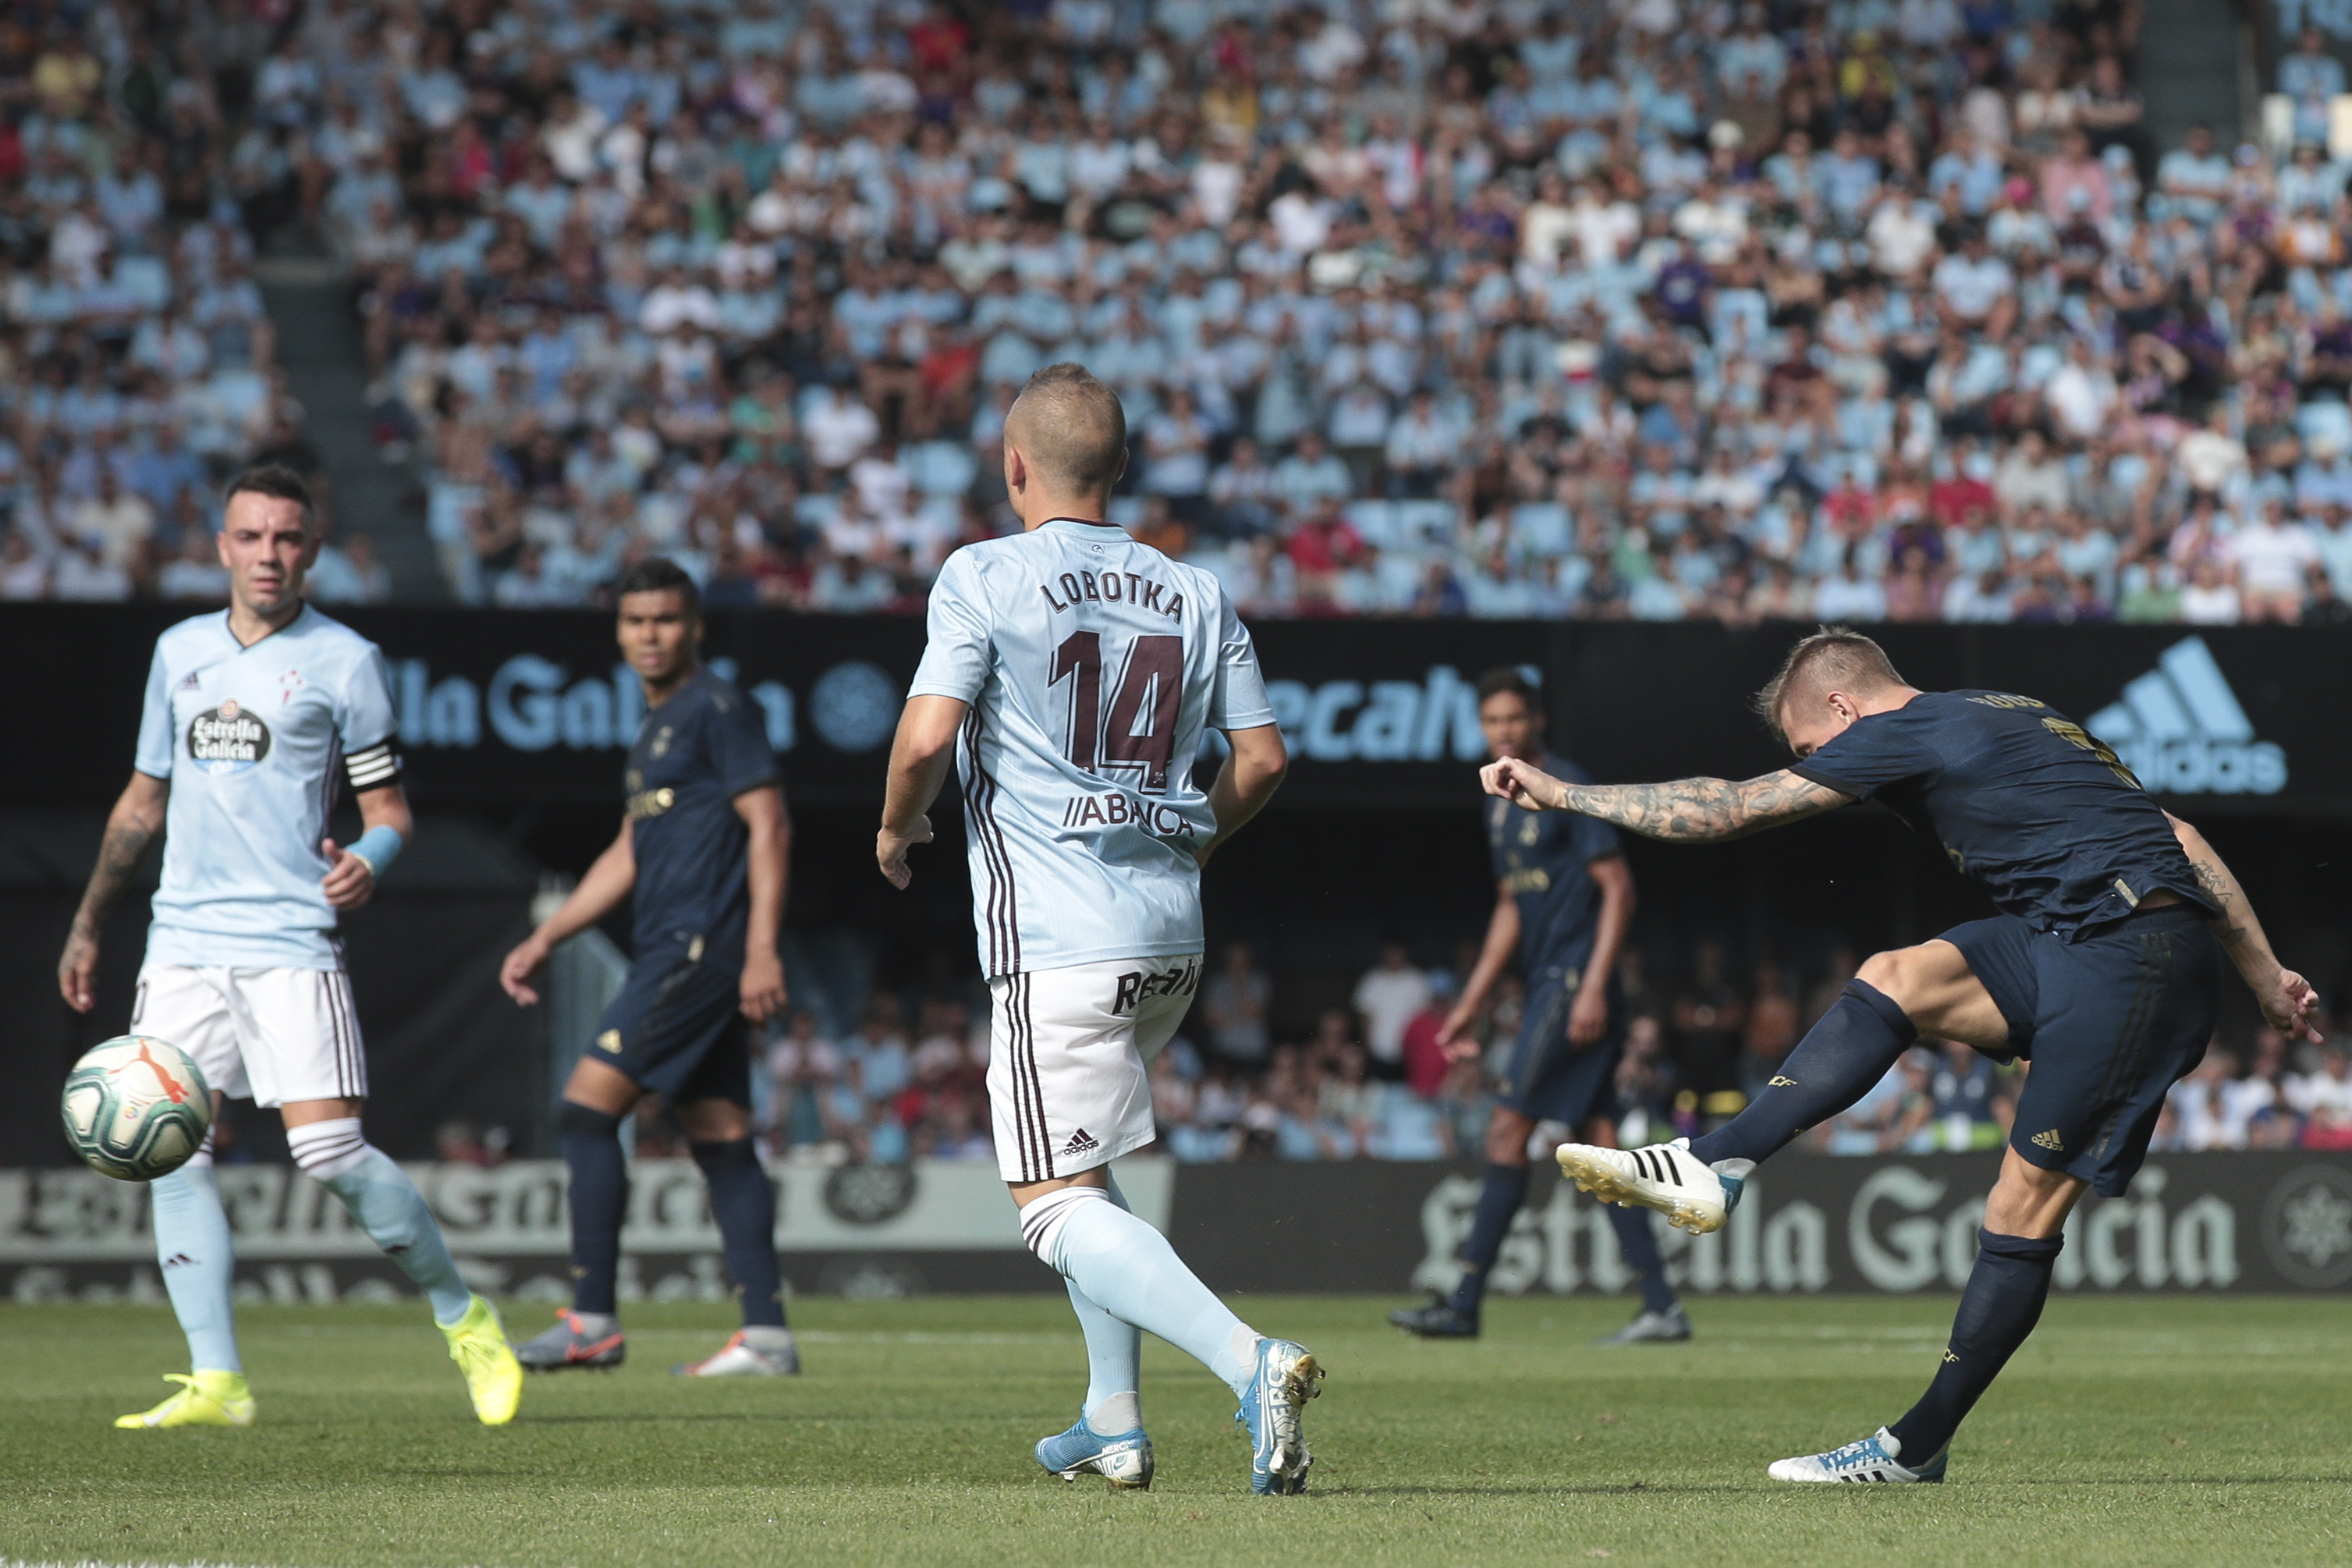 lovenský futbalista v drese Celty Vigo Stanislav Lobotka  (14) a hráč Realu Madrid Toni Kroos (vpravo) v zápase 1. kola španielskej La Ligy Celta Vigo - Real Madrid vo Vige 17. augusta 2019.